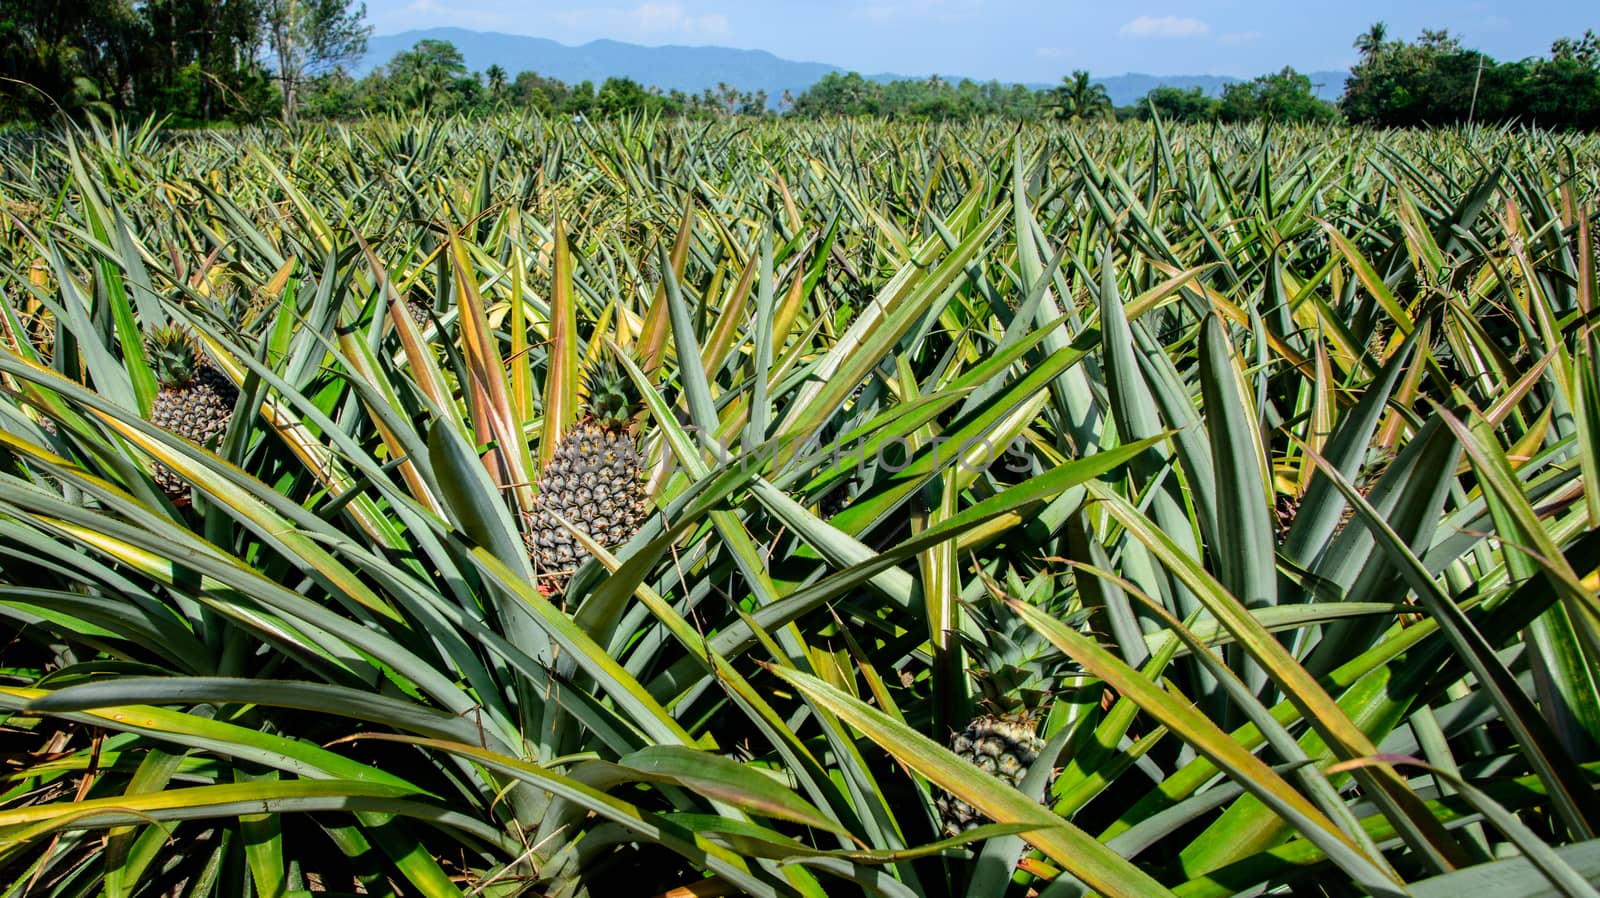 Pineapple farm waiting for harvest